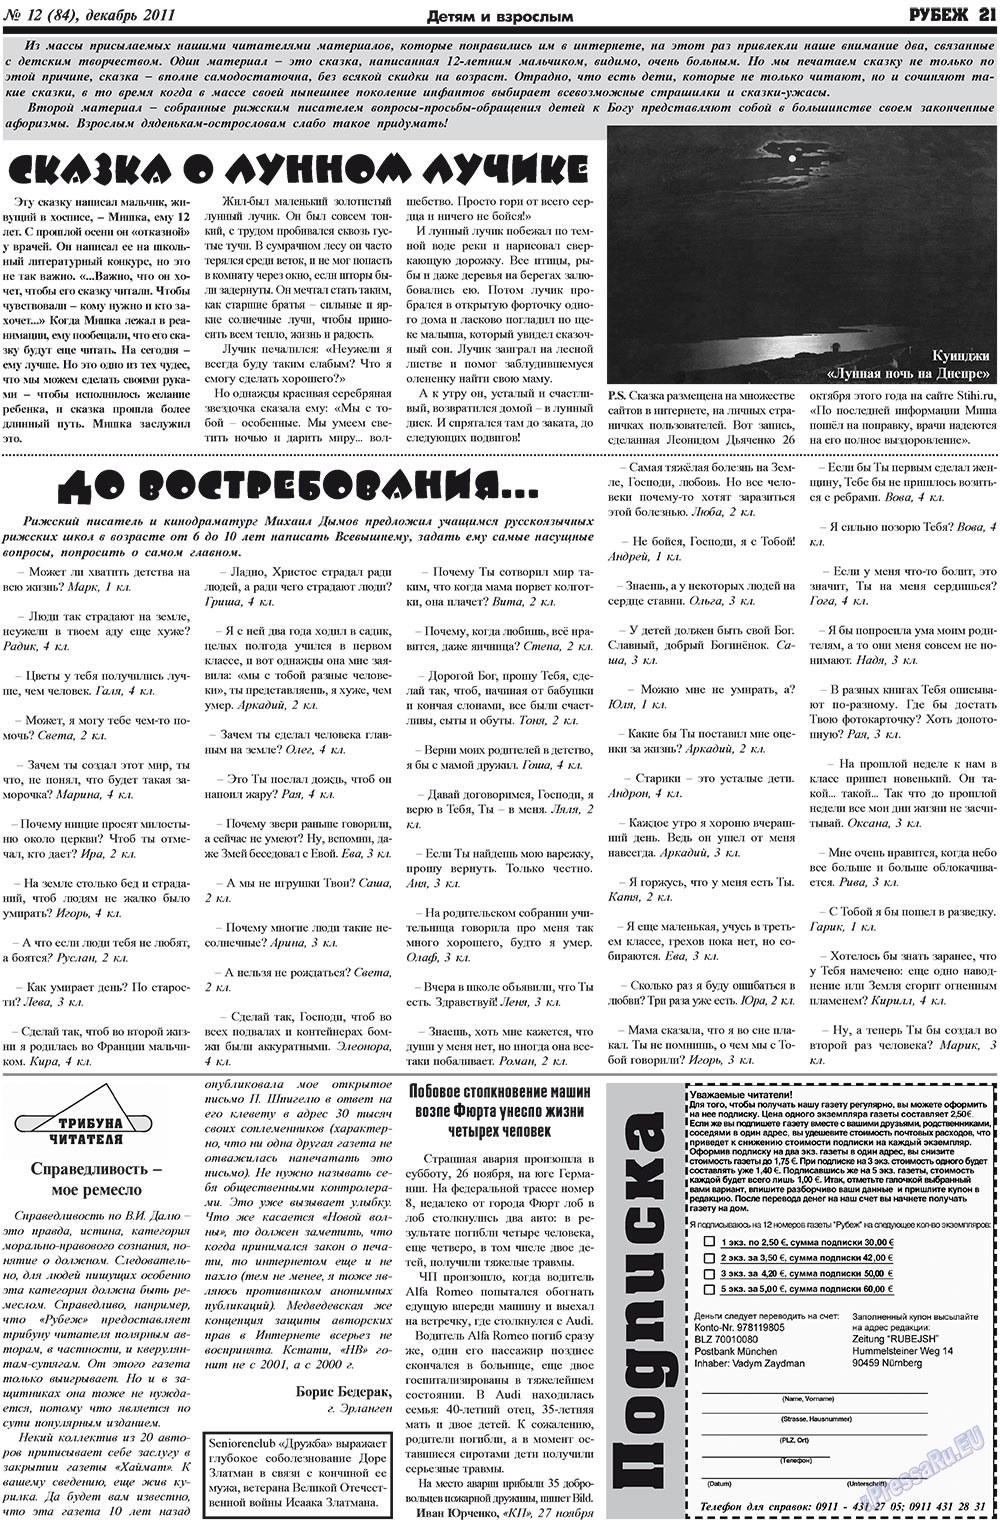 Рубеж (газета). 2011 год, номер 12, стр. 21